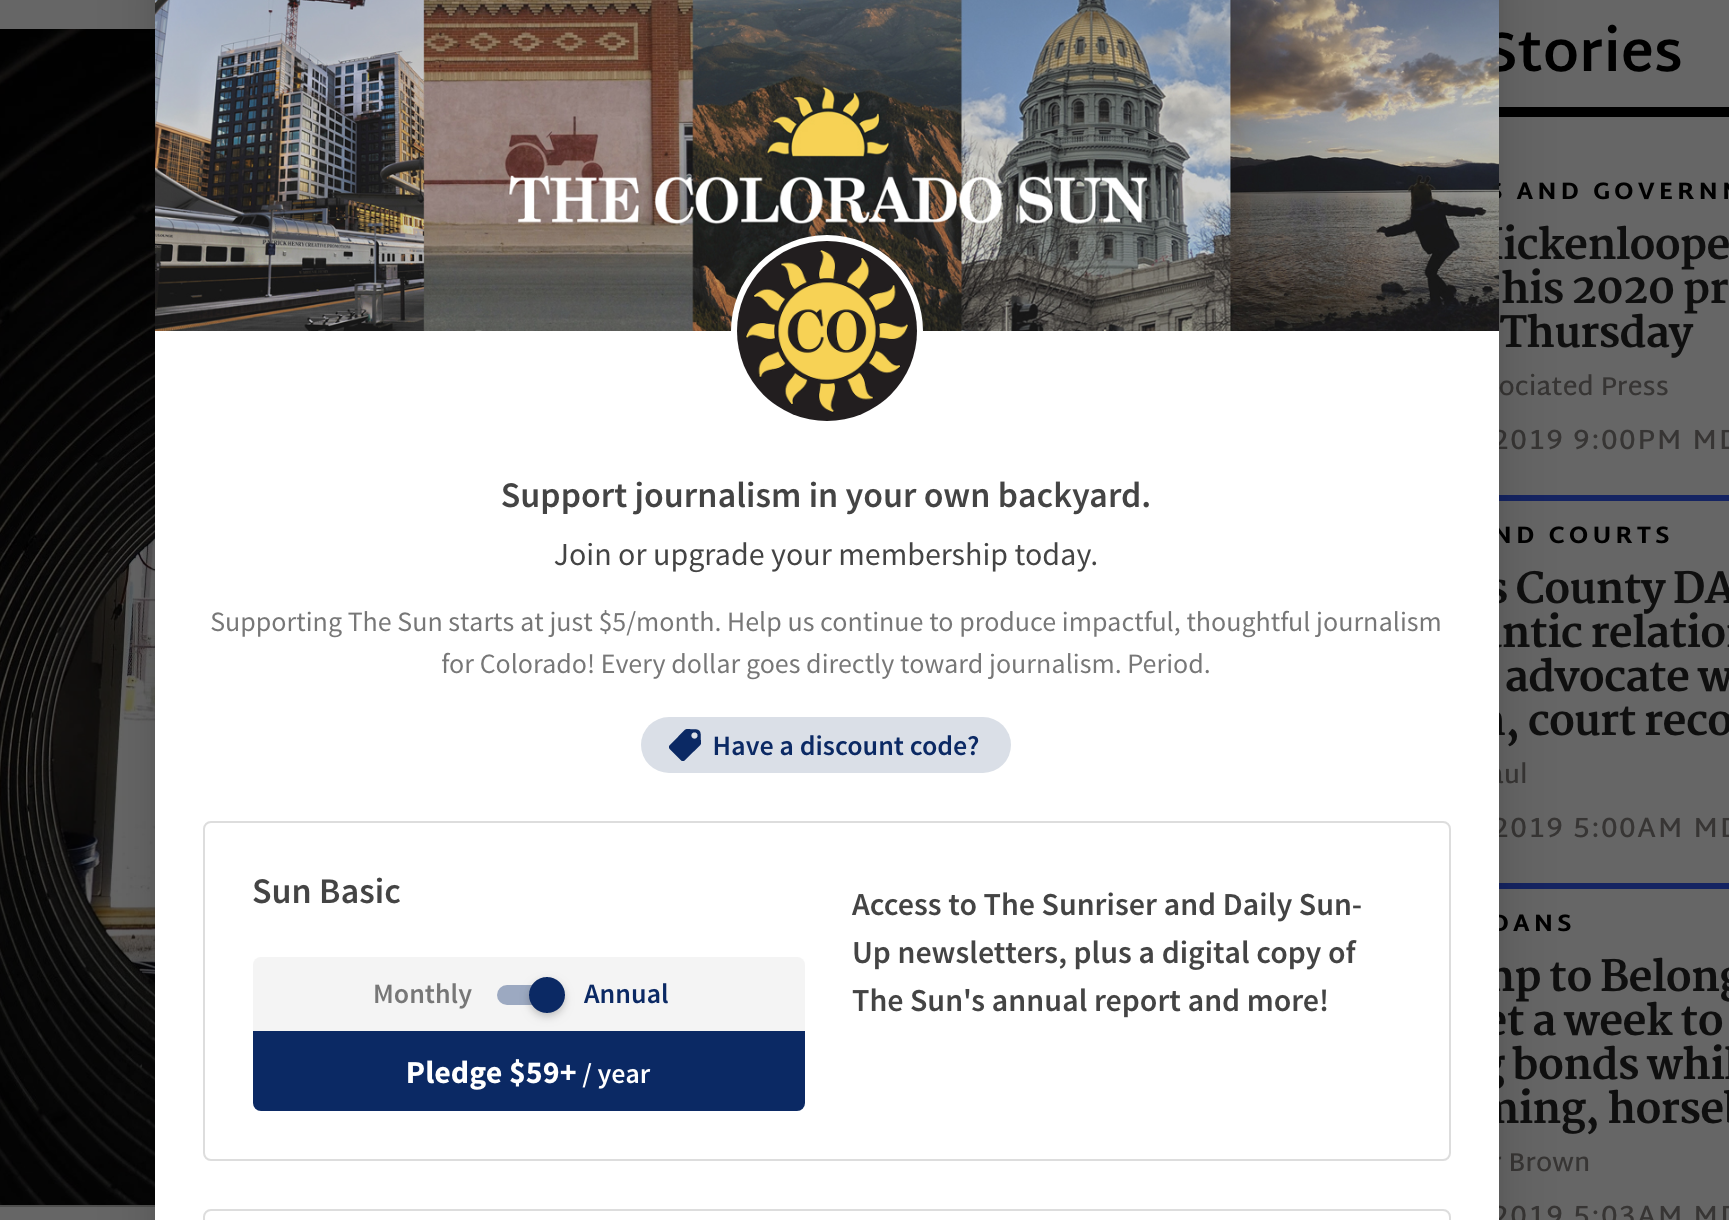 The Colorado Sun's membership page